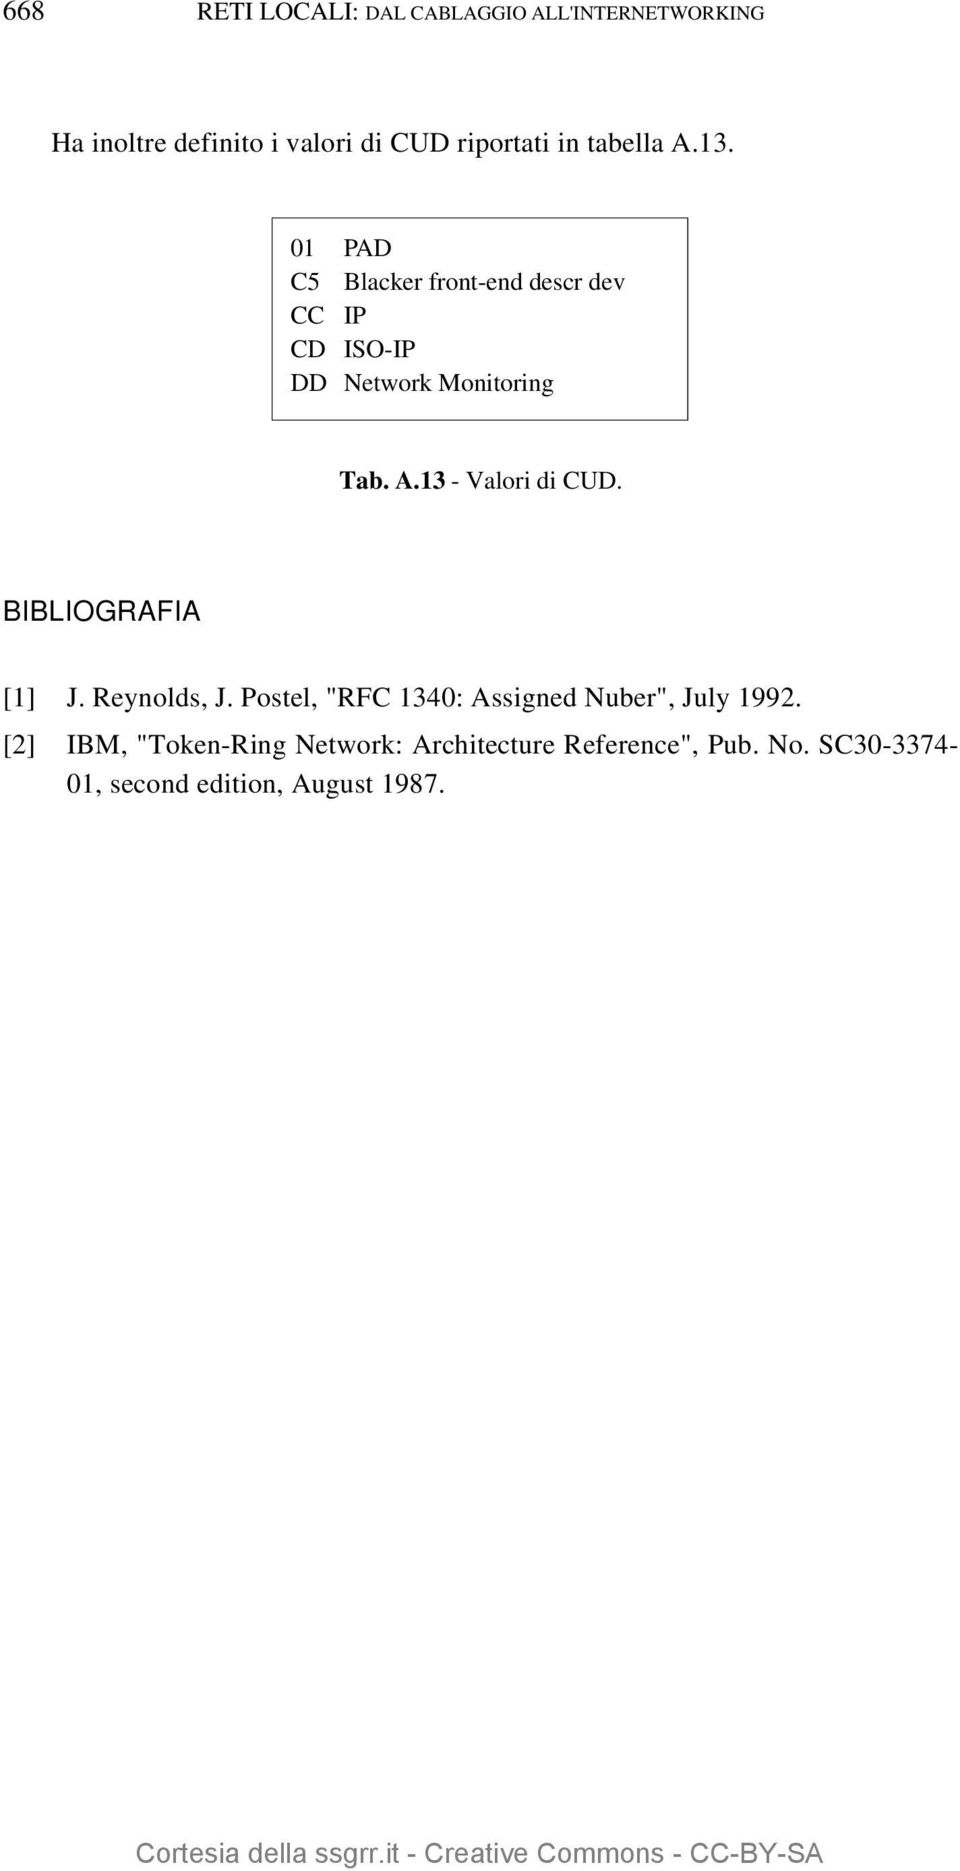 BIBLIOGRAFIA [1] J. Reynolds, J. Postel, "RFC 1340: Assigned Nuber", July 1992.